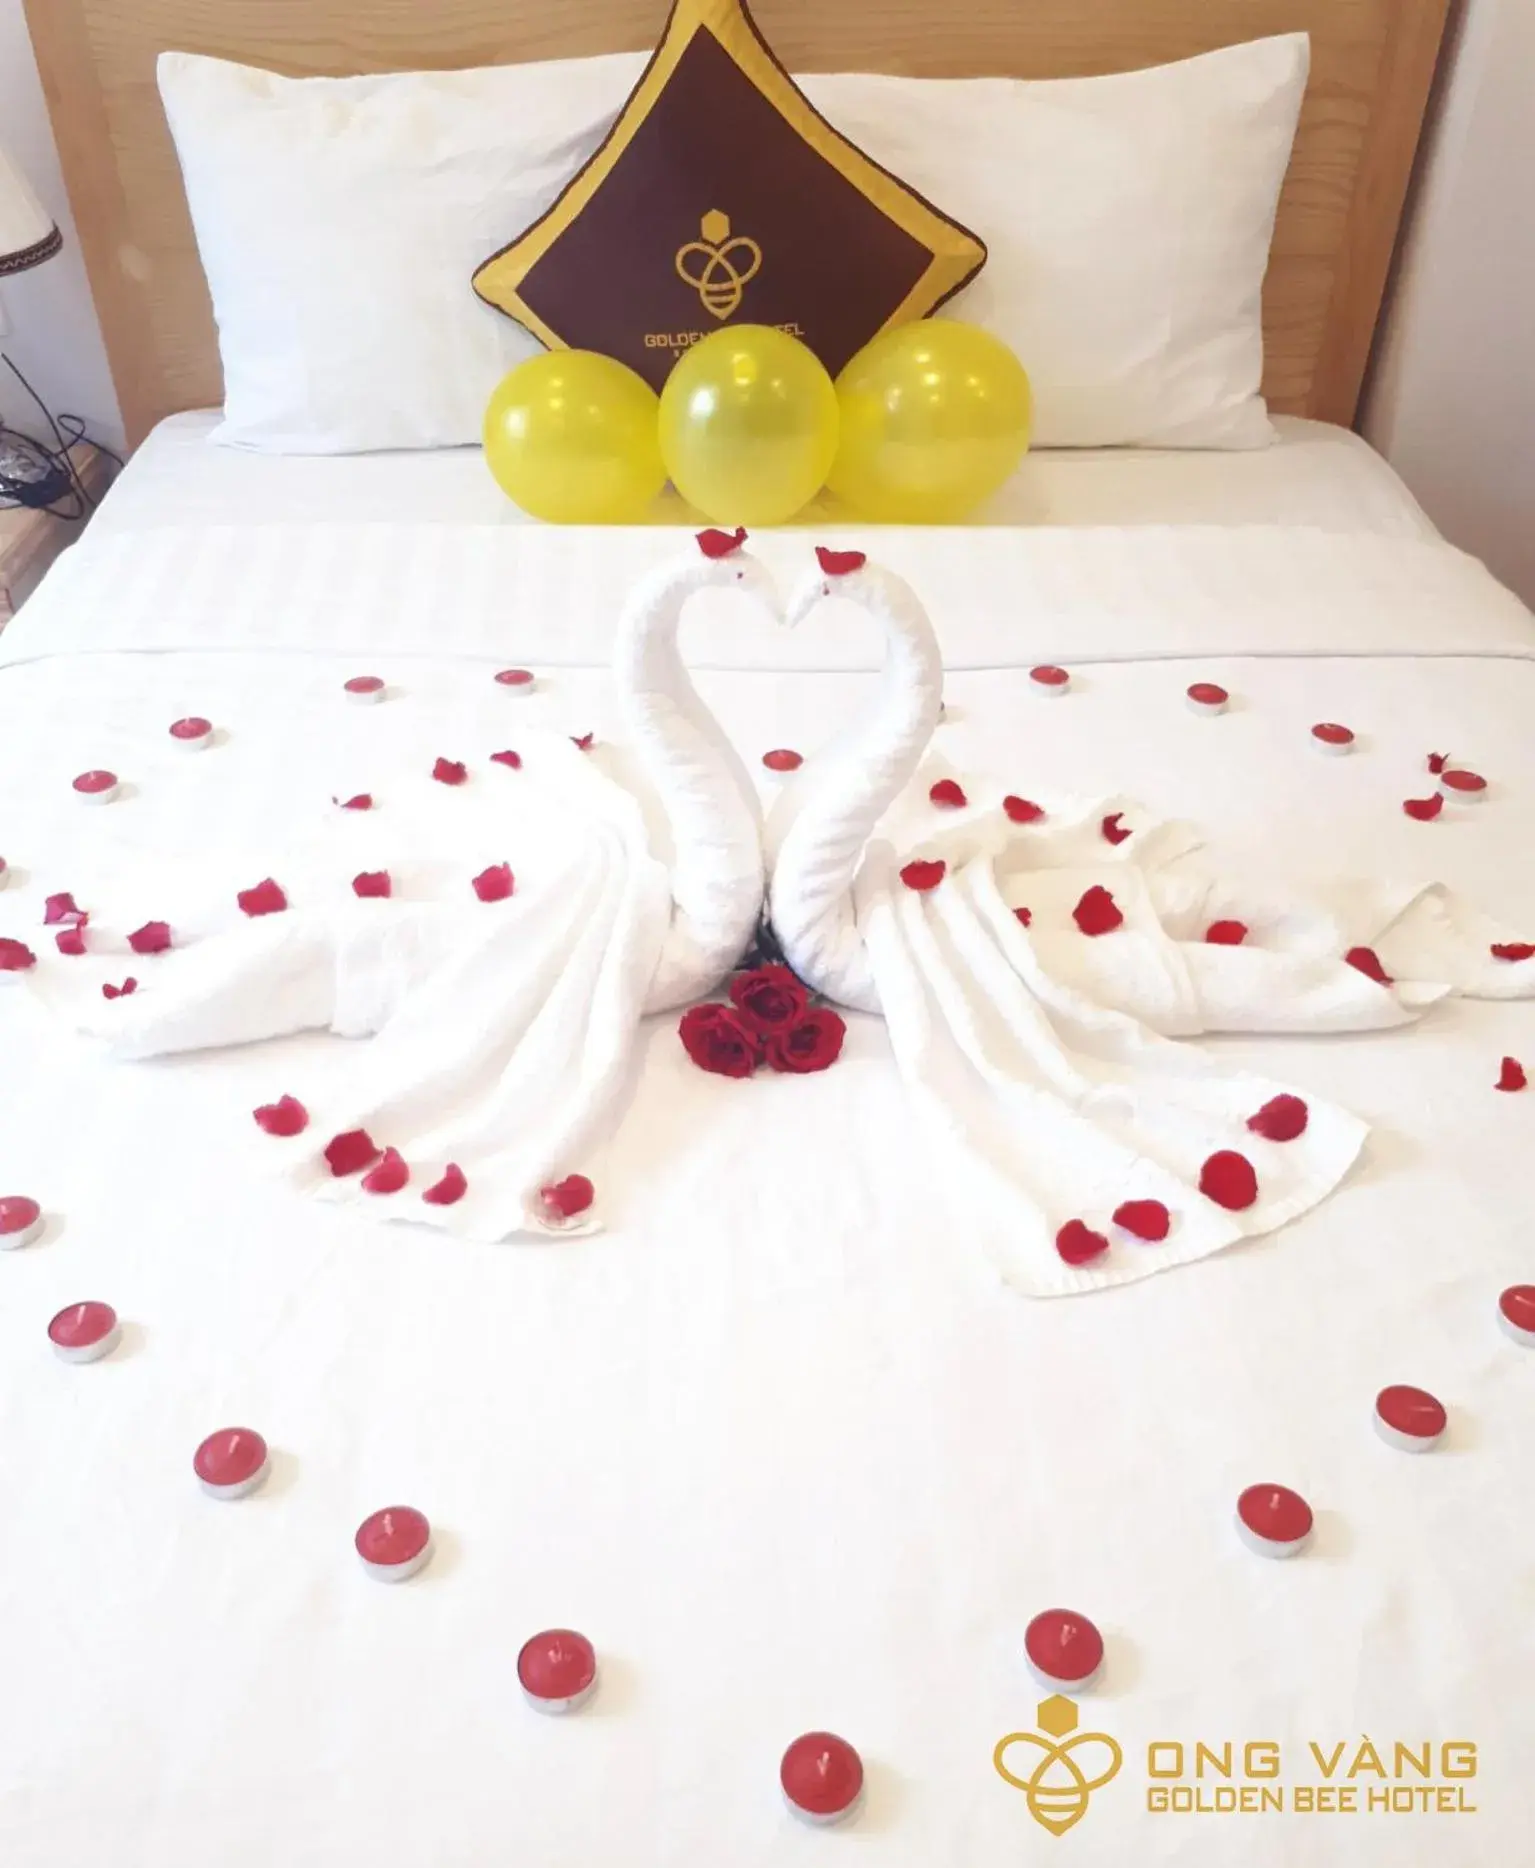 Bed in Golden Bee Hotel